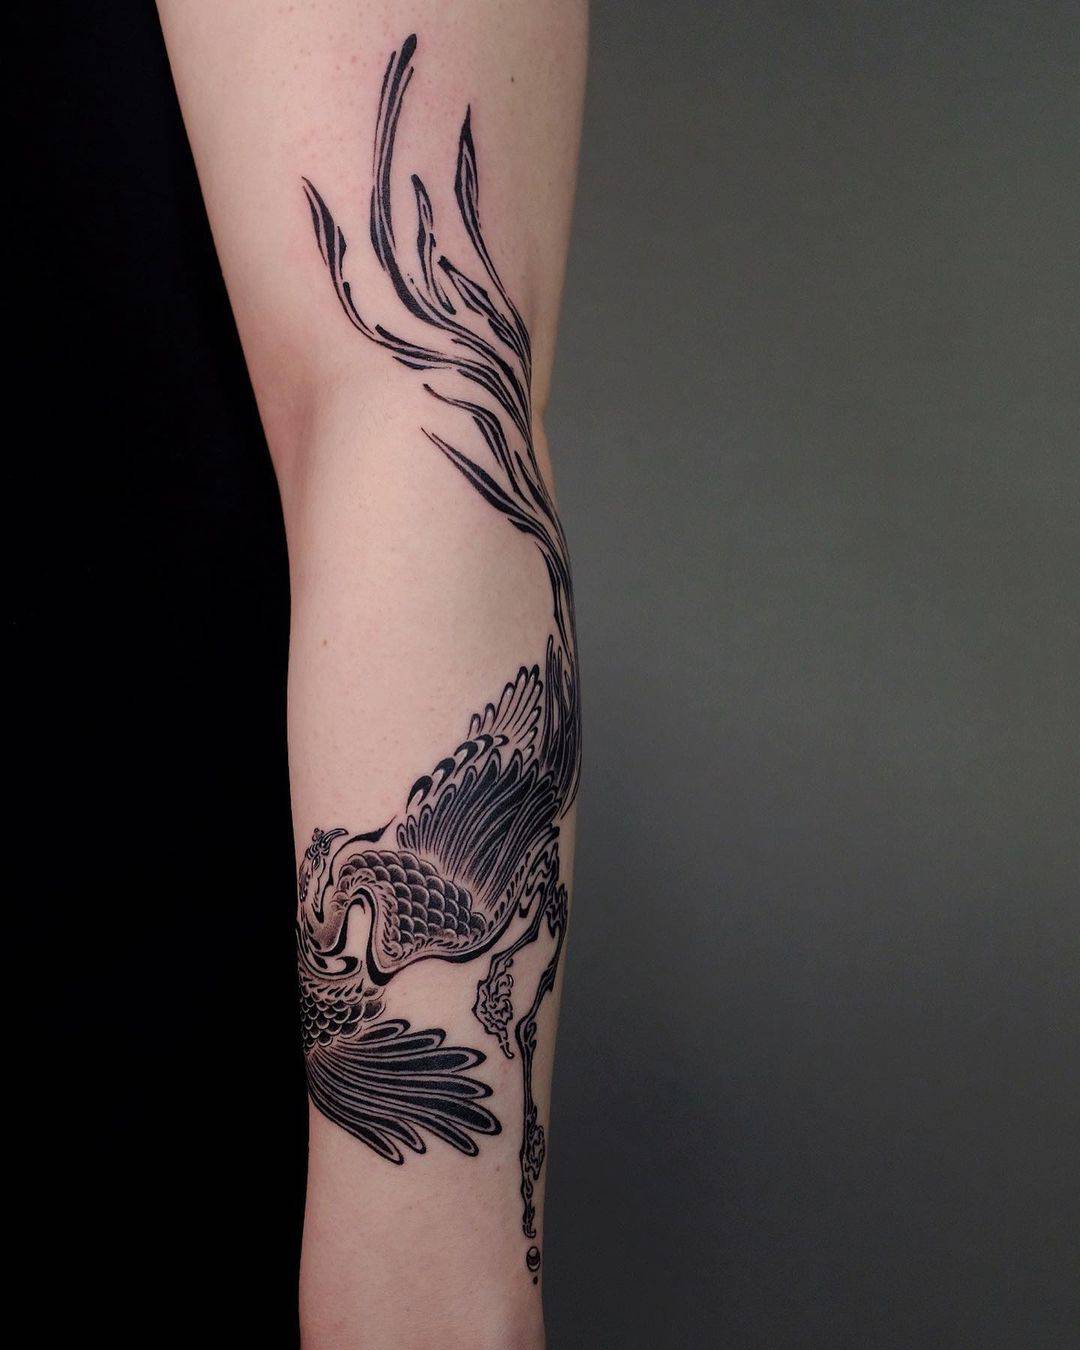 Arm tattoo design by xiaolun tatt 2